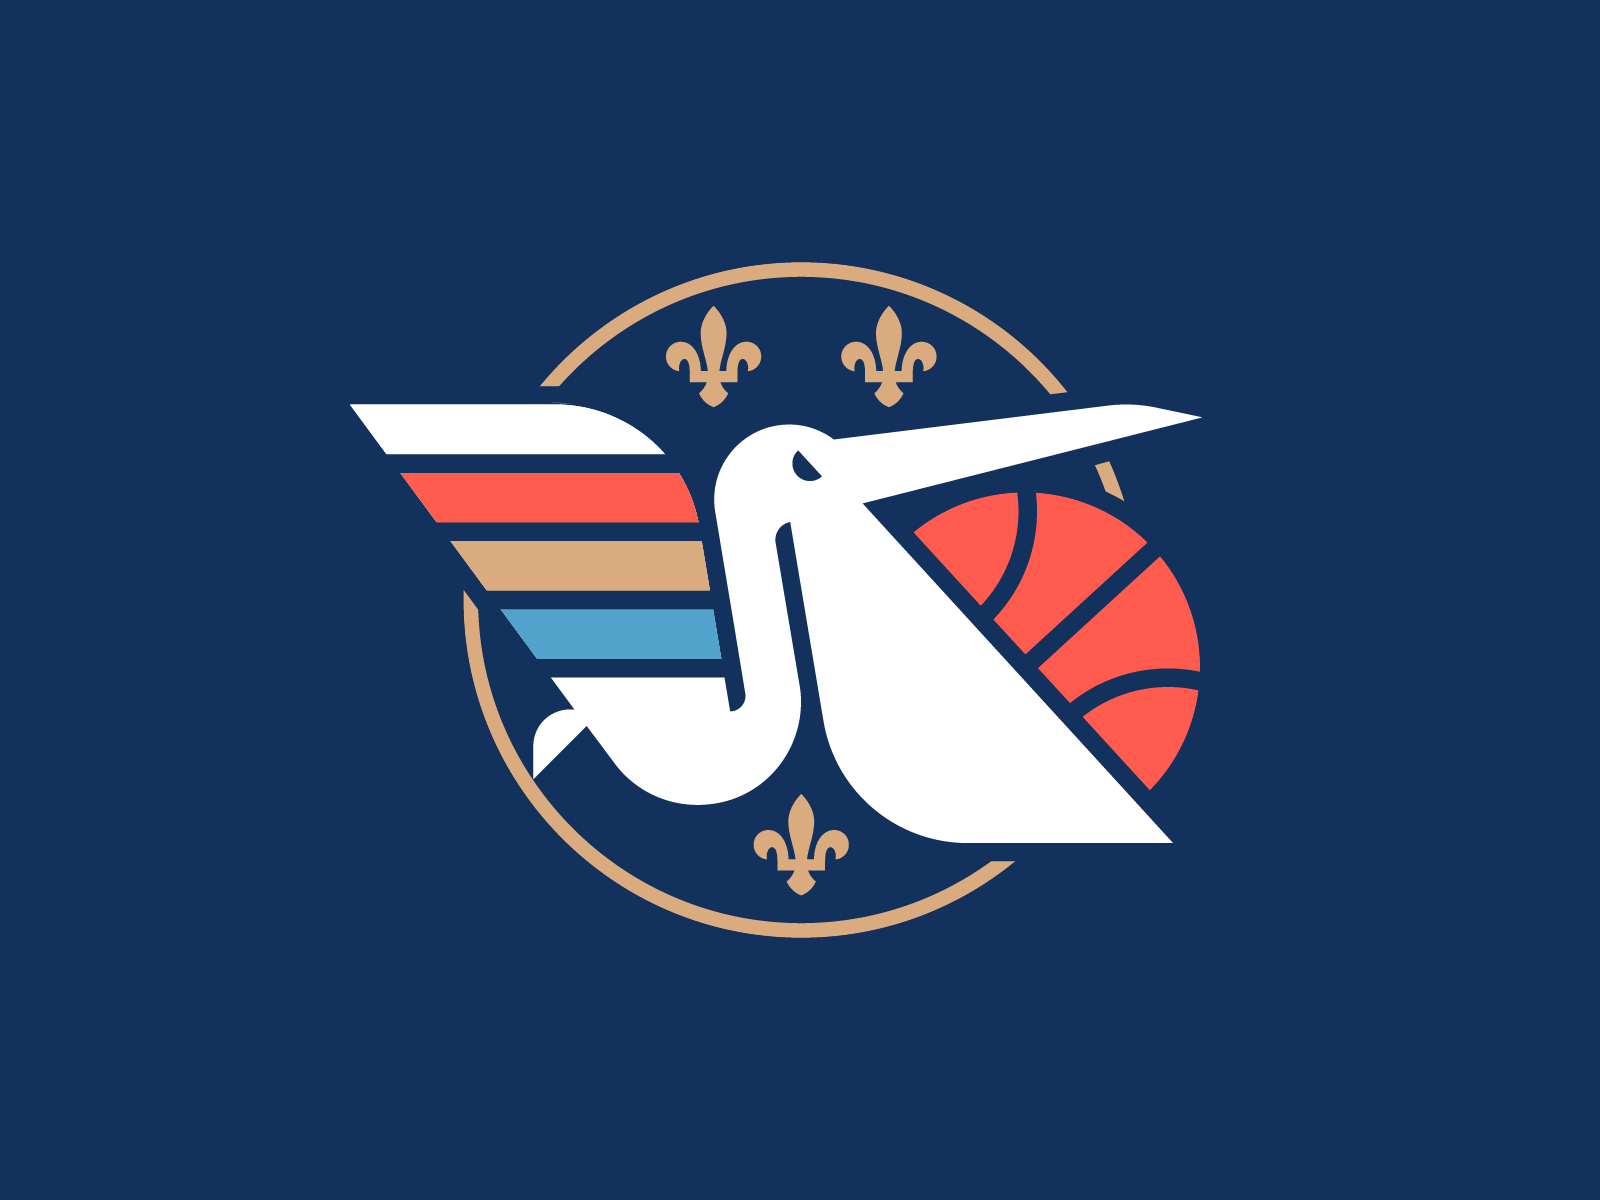 NBA Logos, Redesign Concept